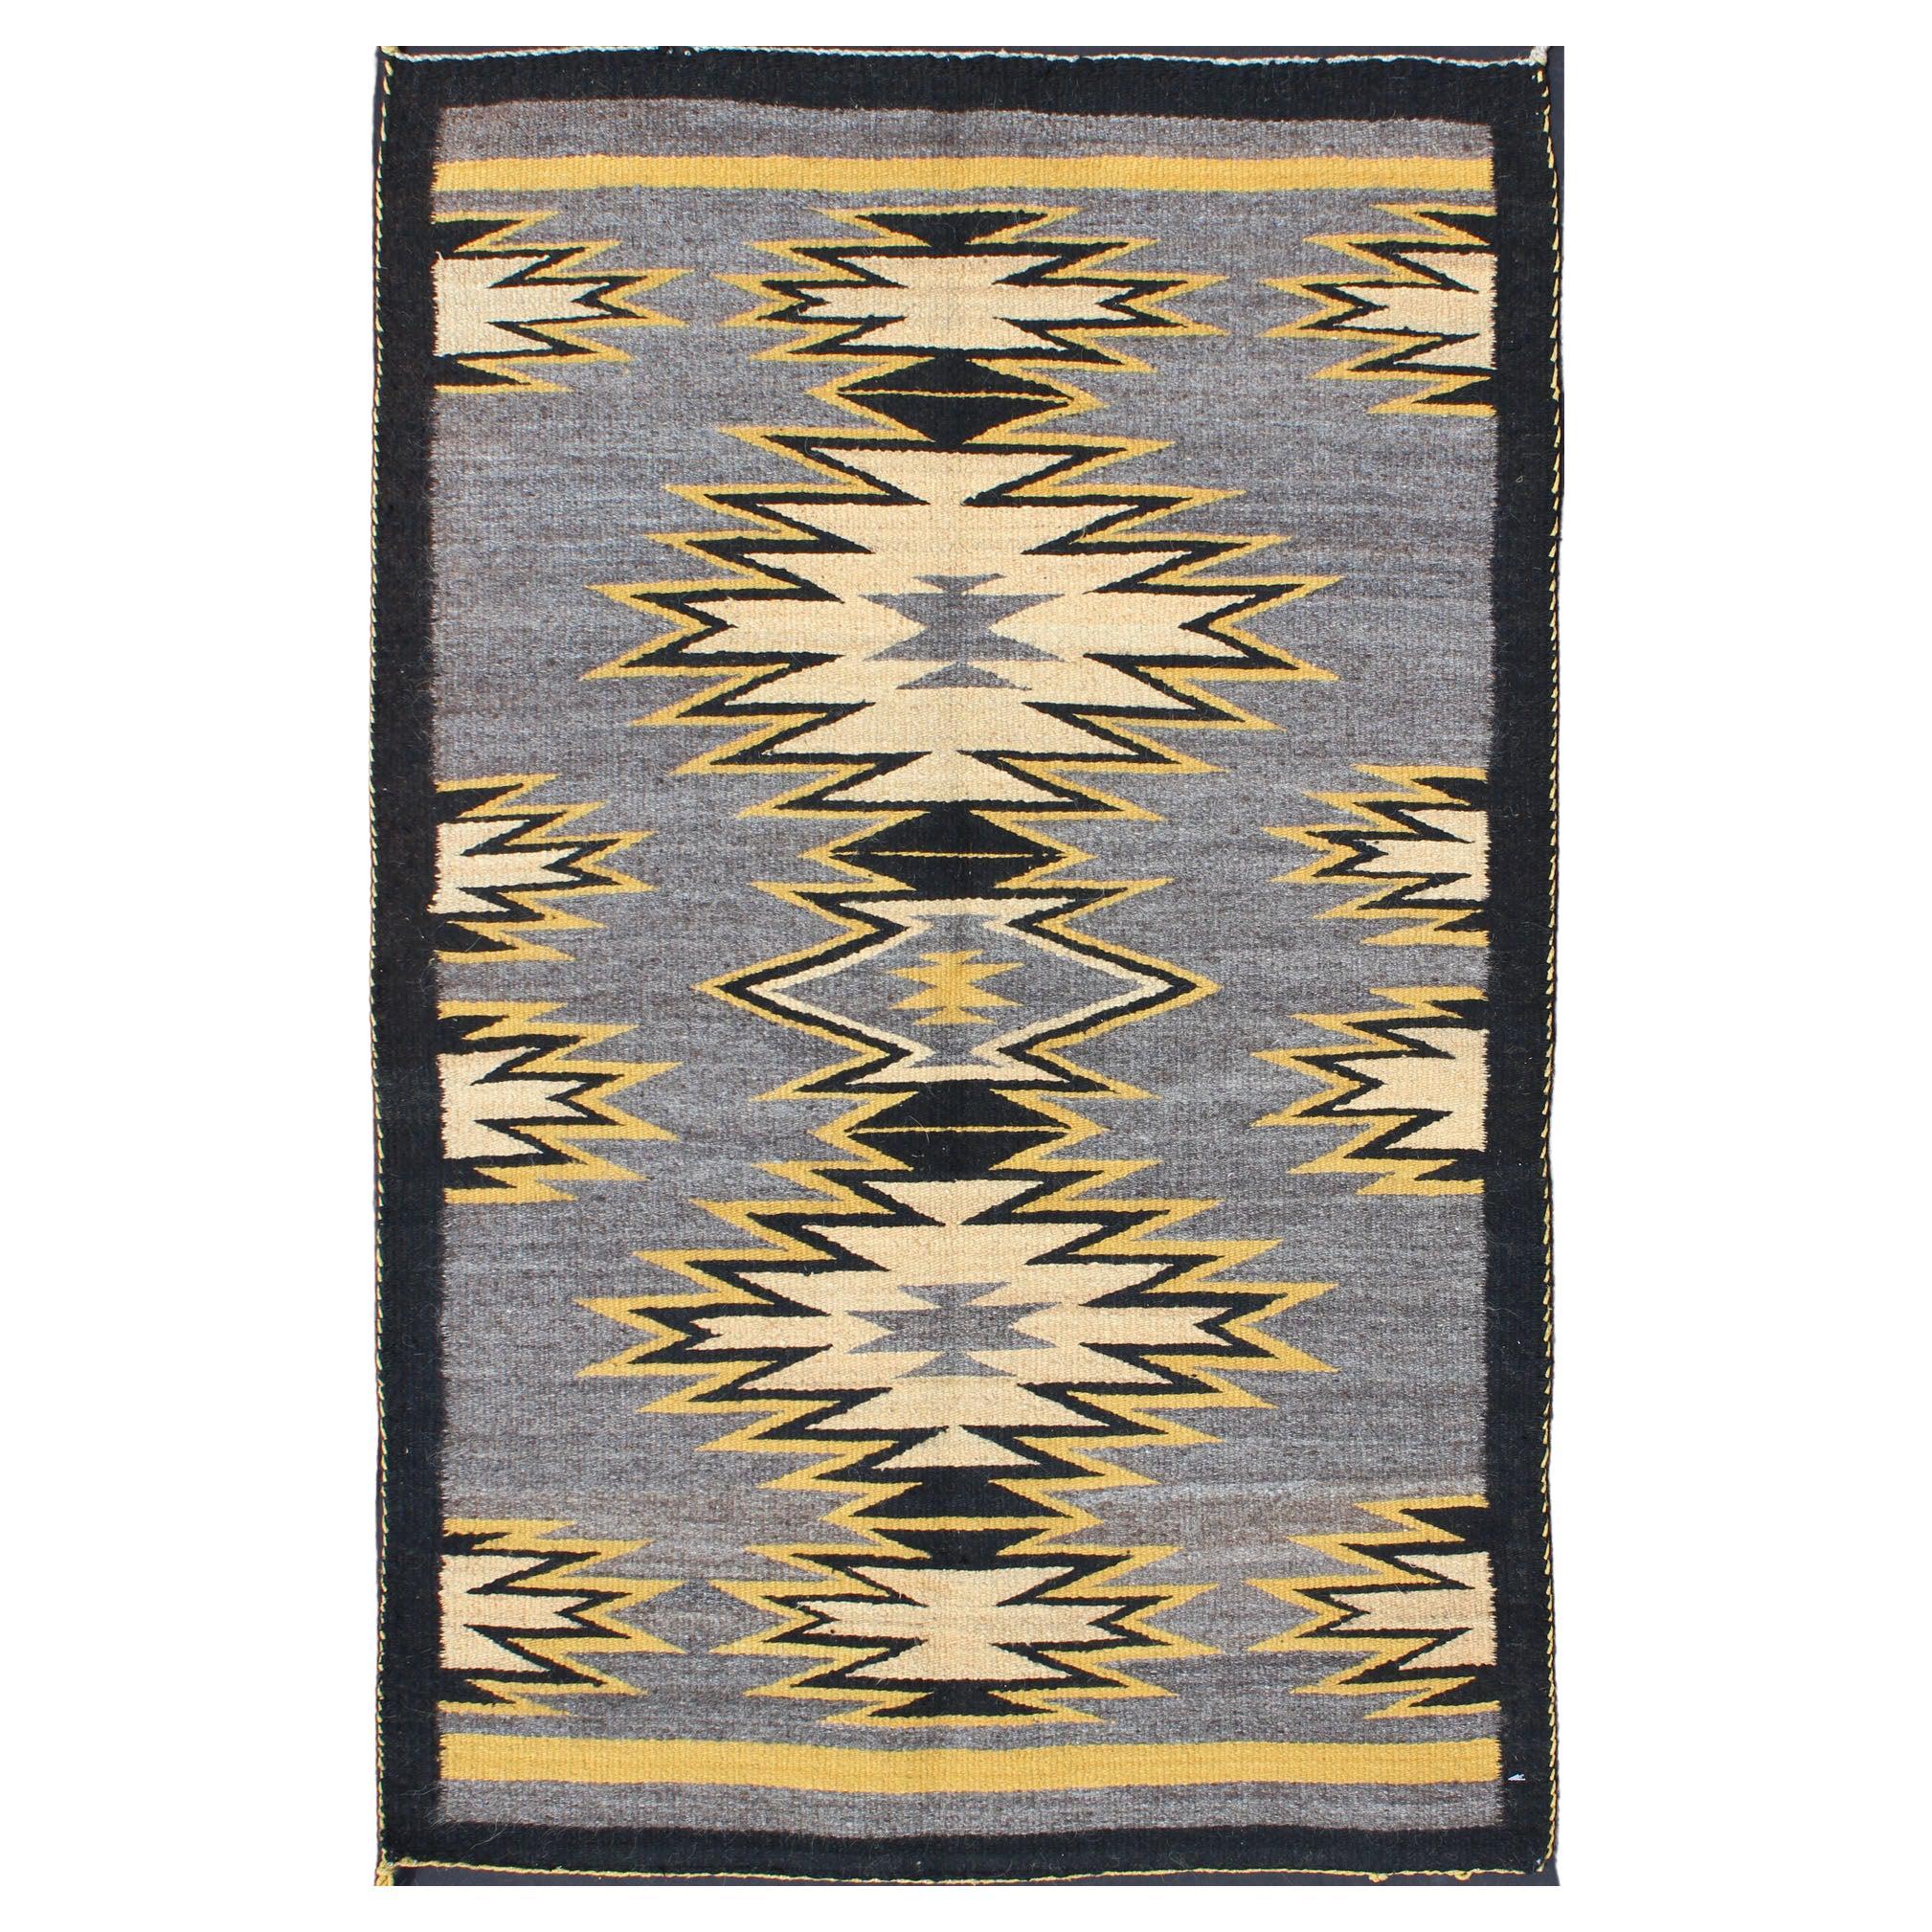 Geometrischer Navajo-Teppich mit mehr Medaillons mit Stammesmotiven in Creme, Gold, Grau und Schwarz